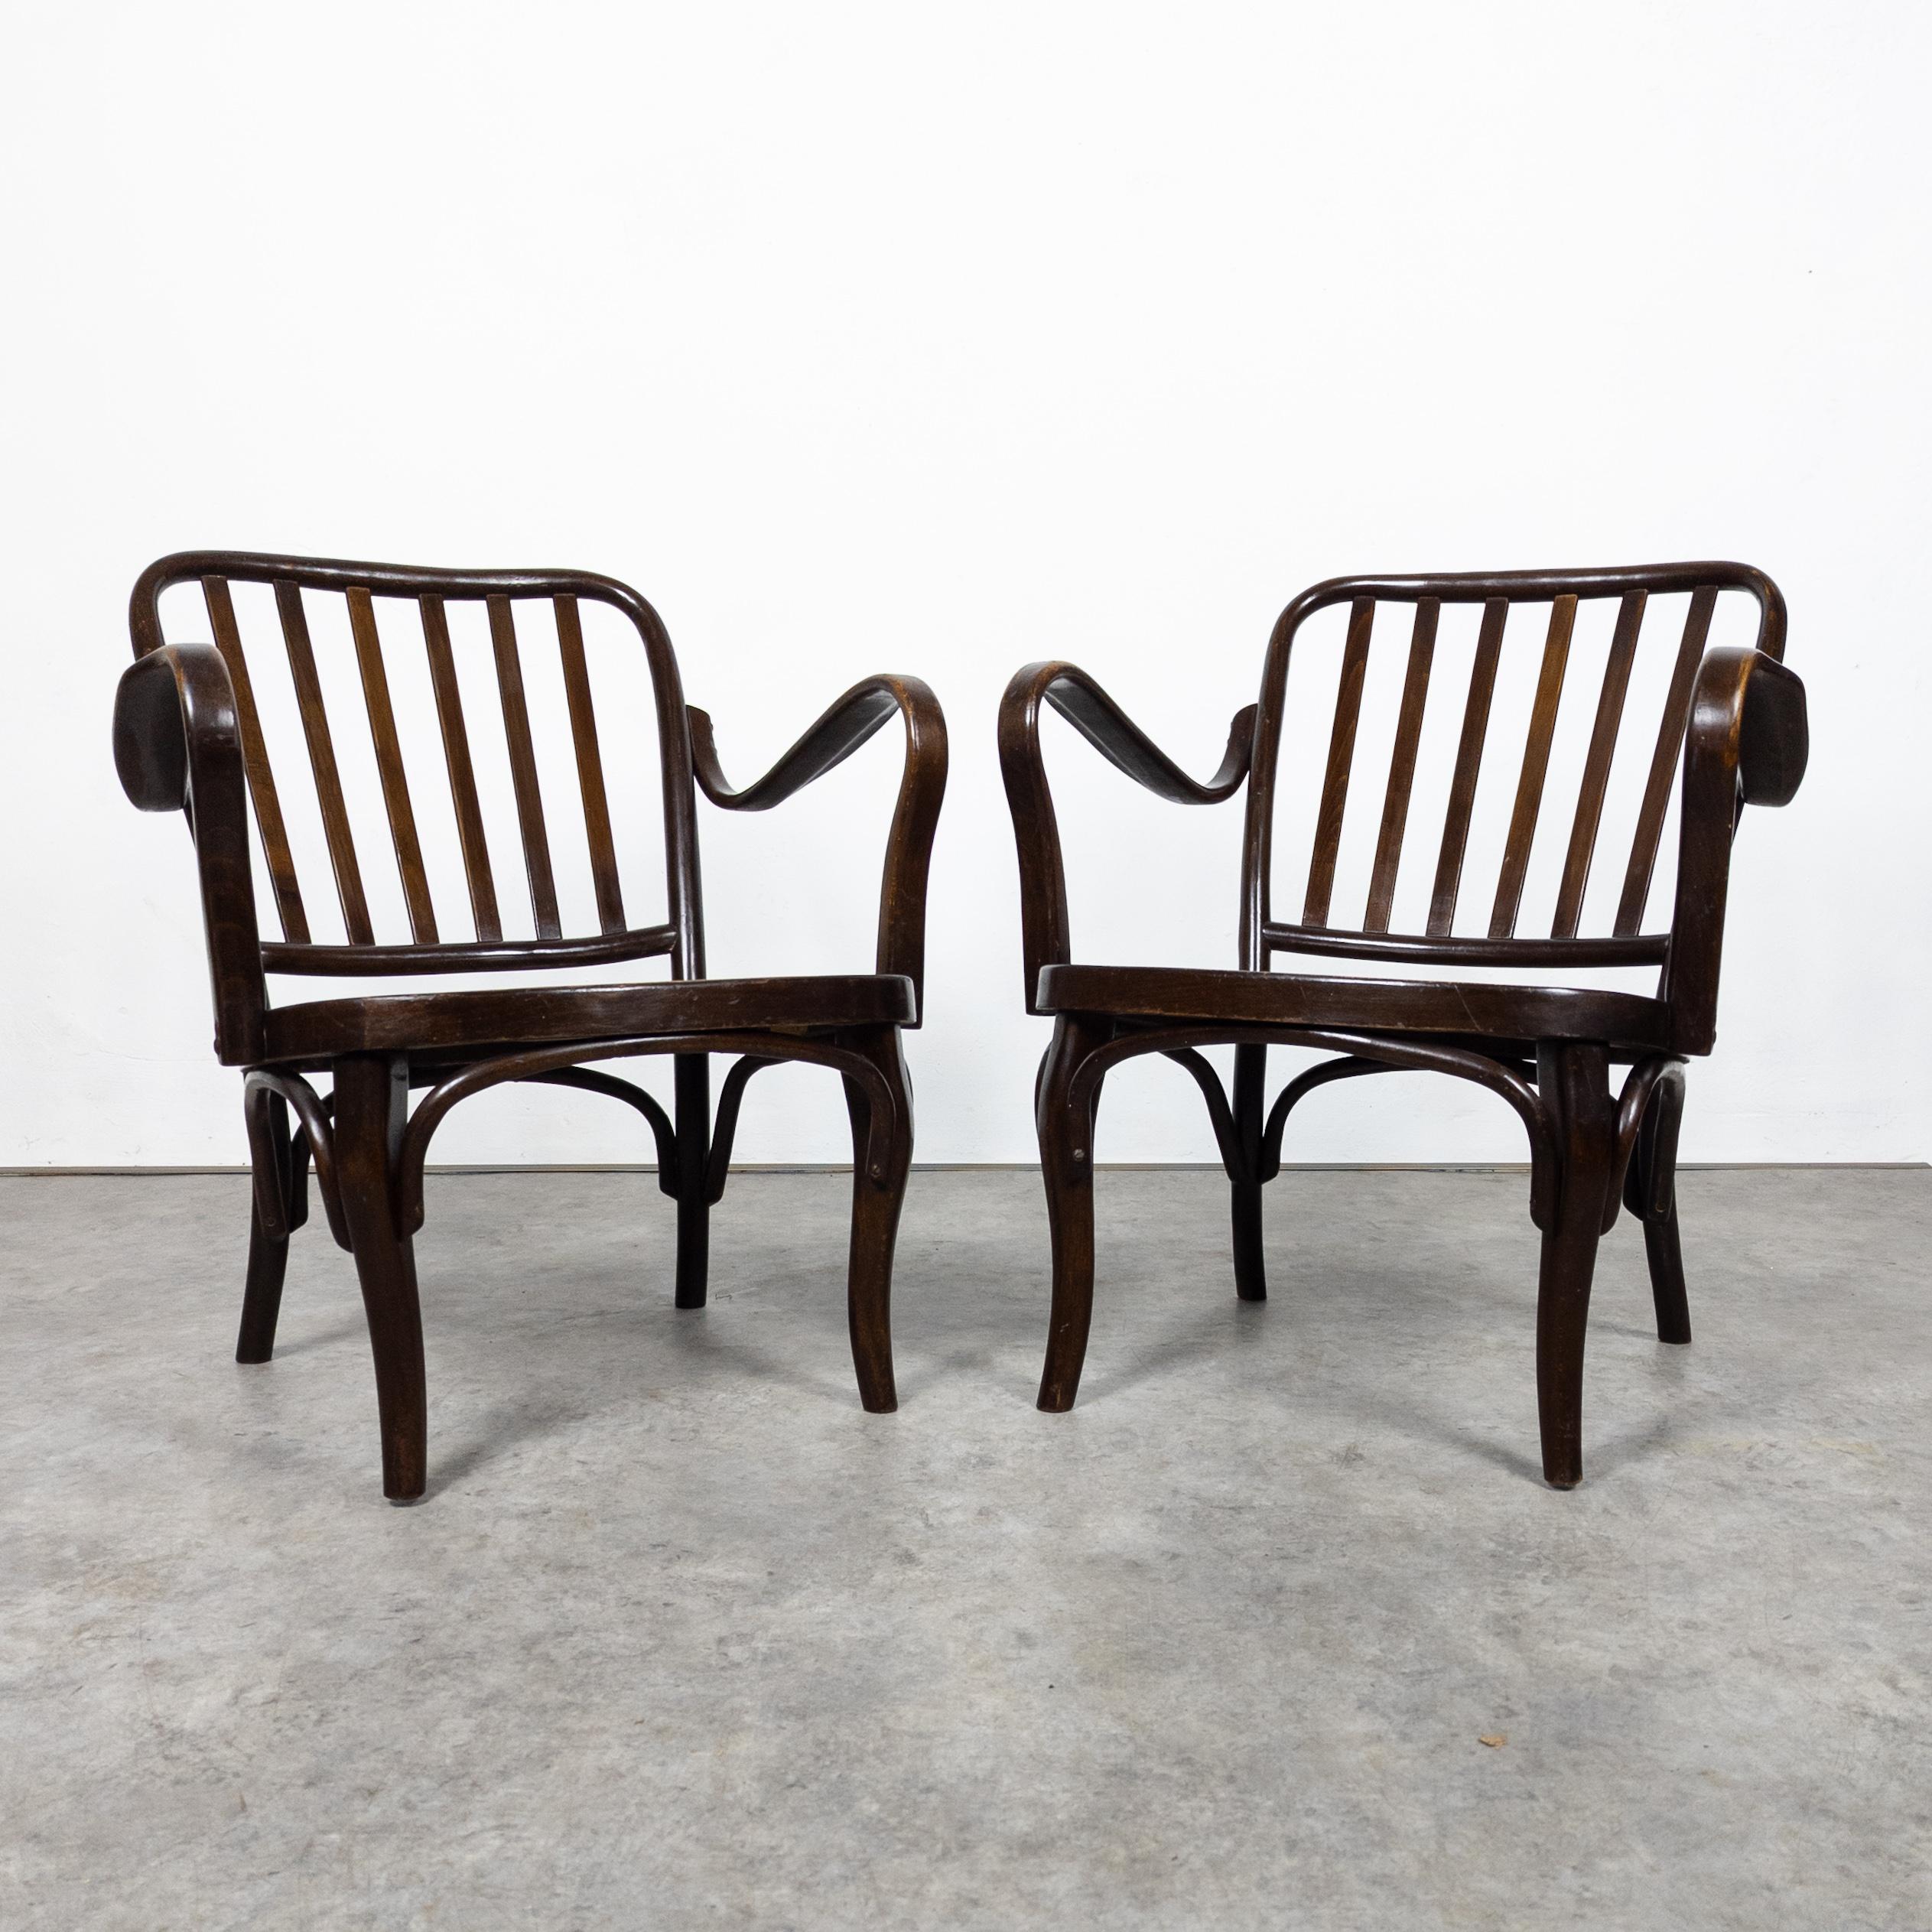 Thonet A 752 ist ein klassischer Sessel, der zeitlose Eleganz verkörpert. Entworfen von Josef Frank, Wien, um 1930, hergestellt von der renommierten Firma Thonet, zeigen diese Sessel die ikonische Bugholztechnik mit ihren anmutig geschwungenen